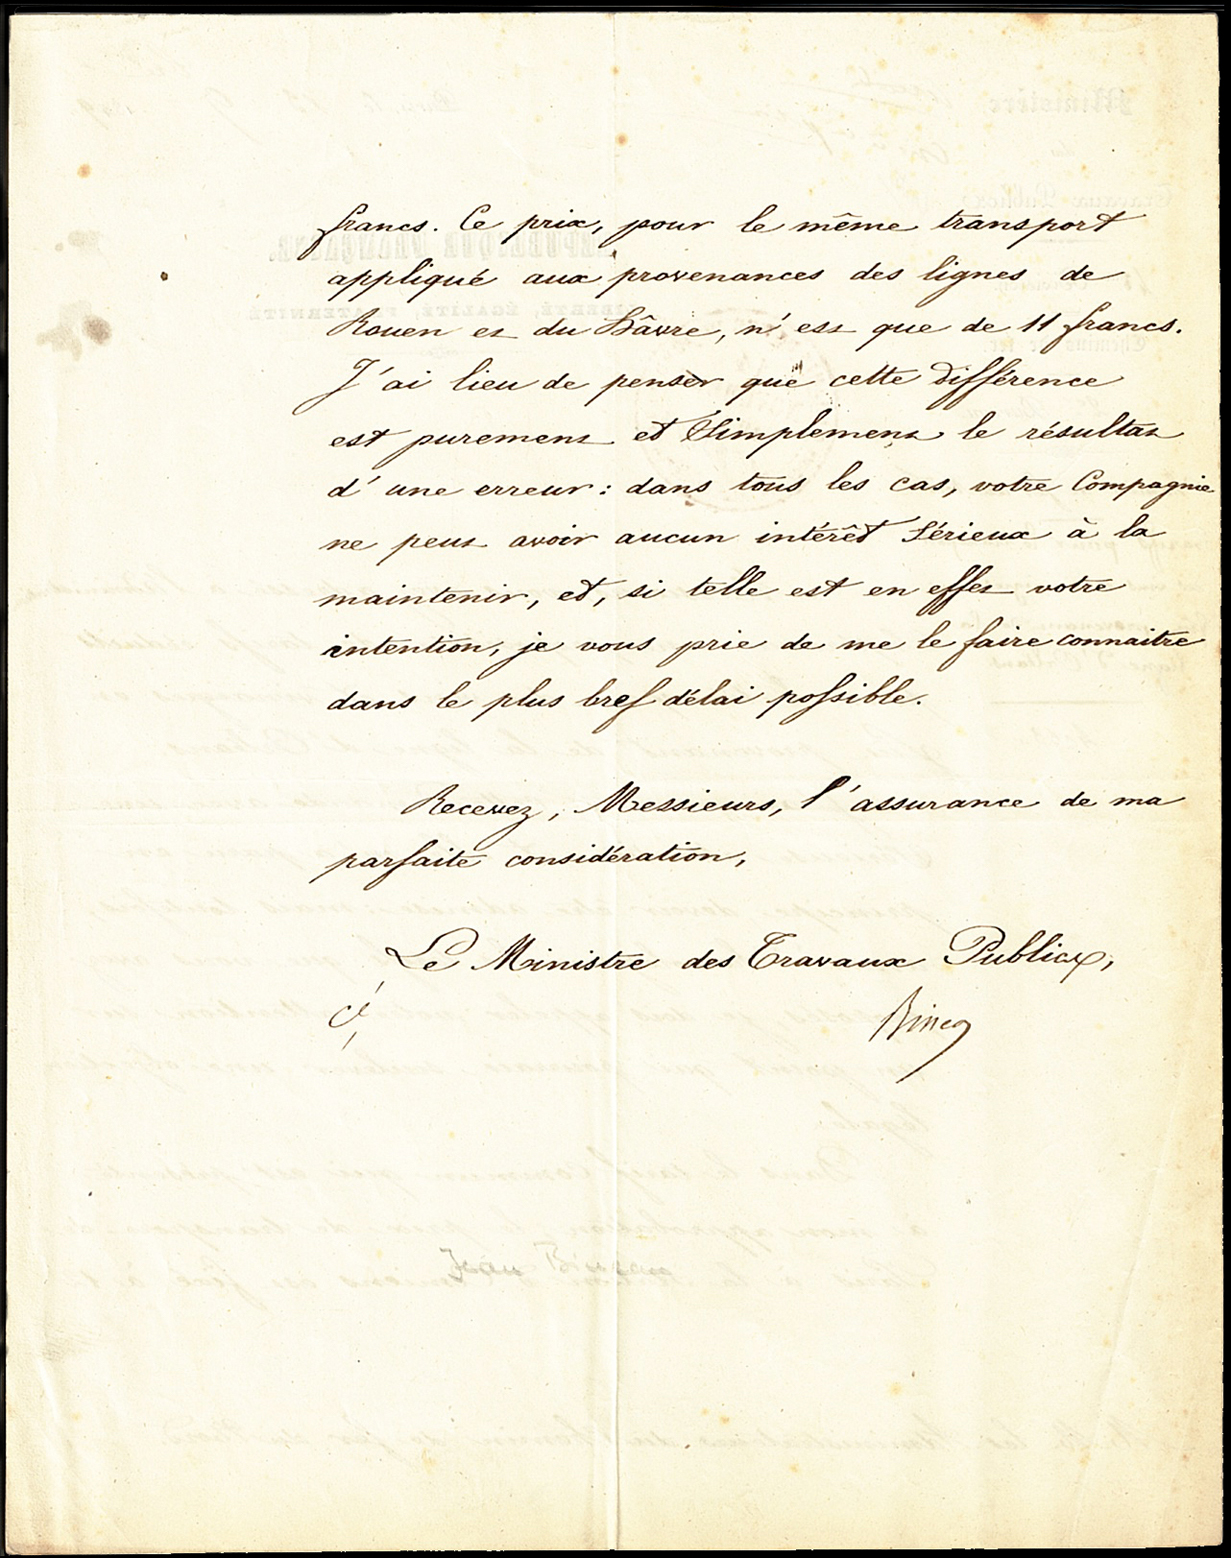 Referenz: bineau-jean-martial-ministre-des-travaux-publics-1849-51-ministre-des-finances-1852-55